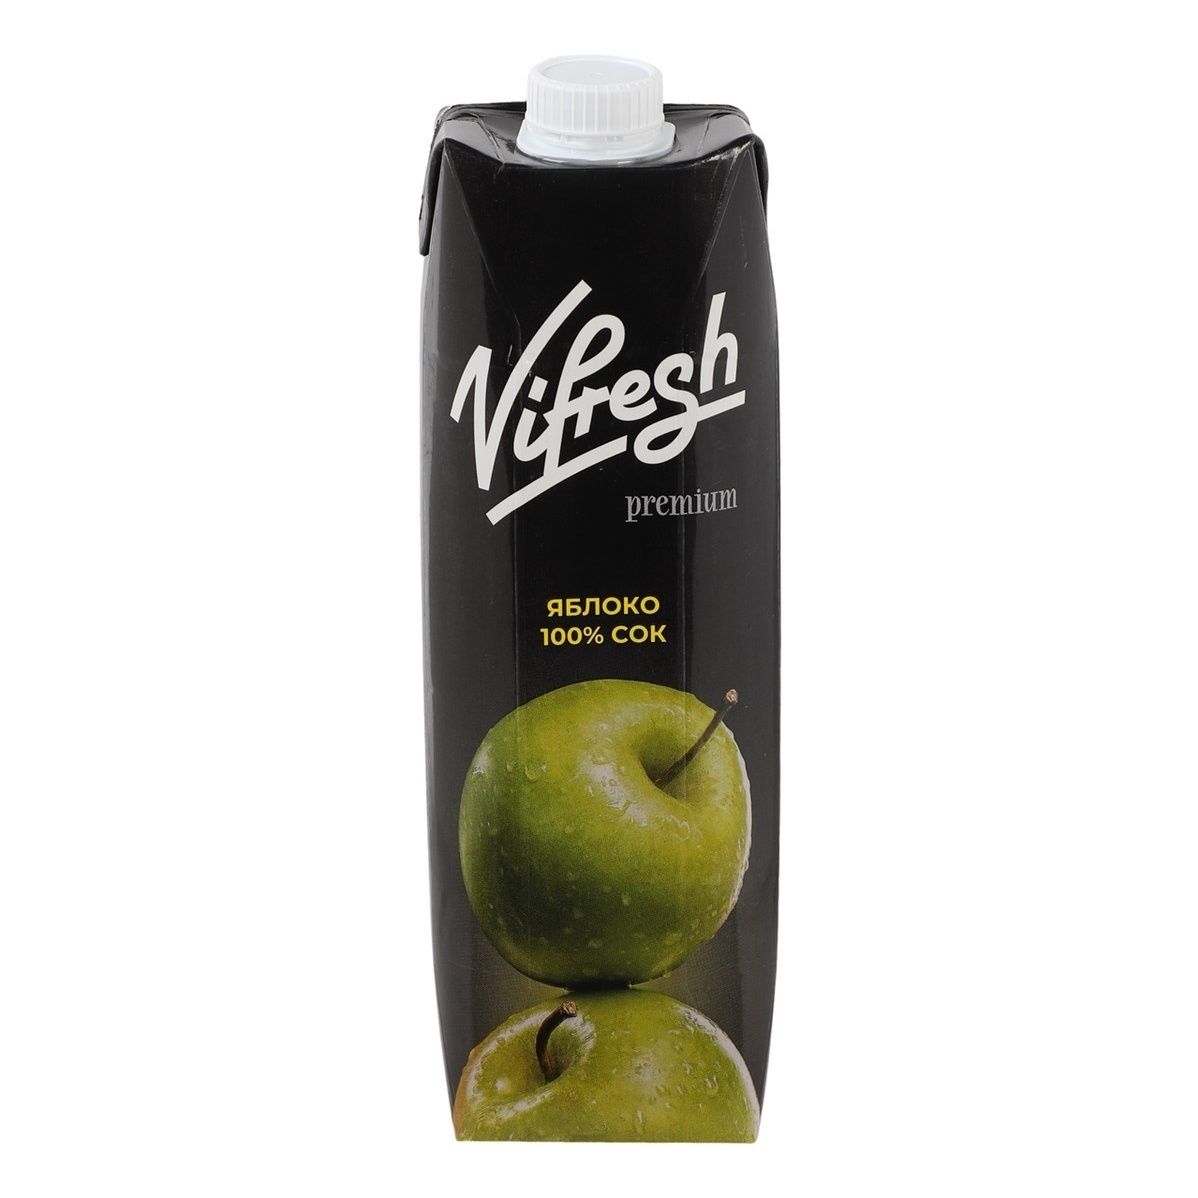 Сок Vifresh Premium яблоко стерилизованный 1 л х 12 шт